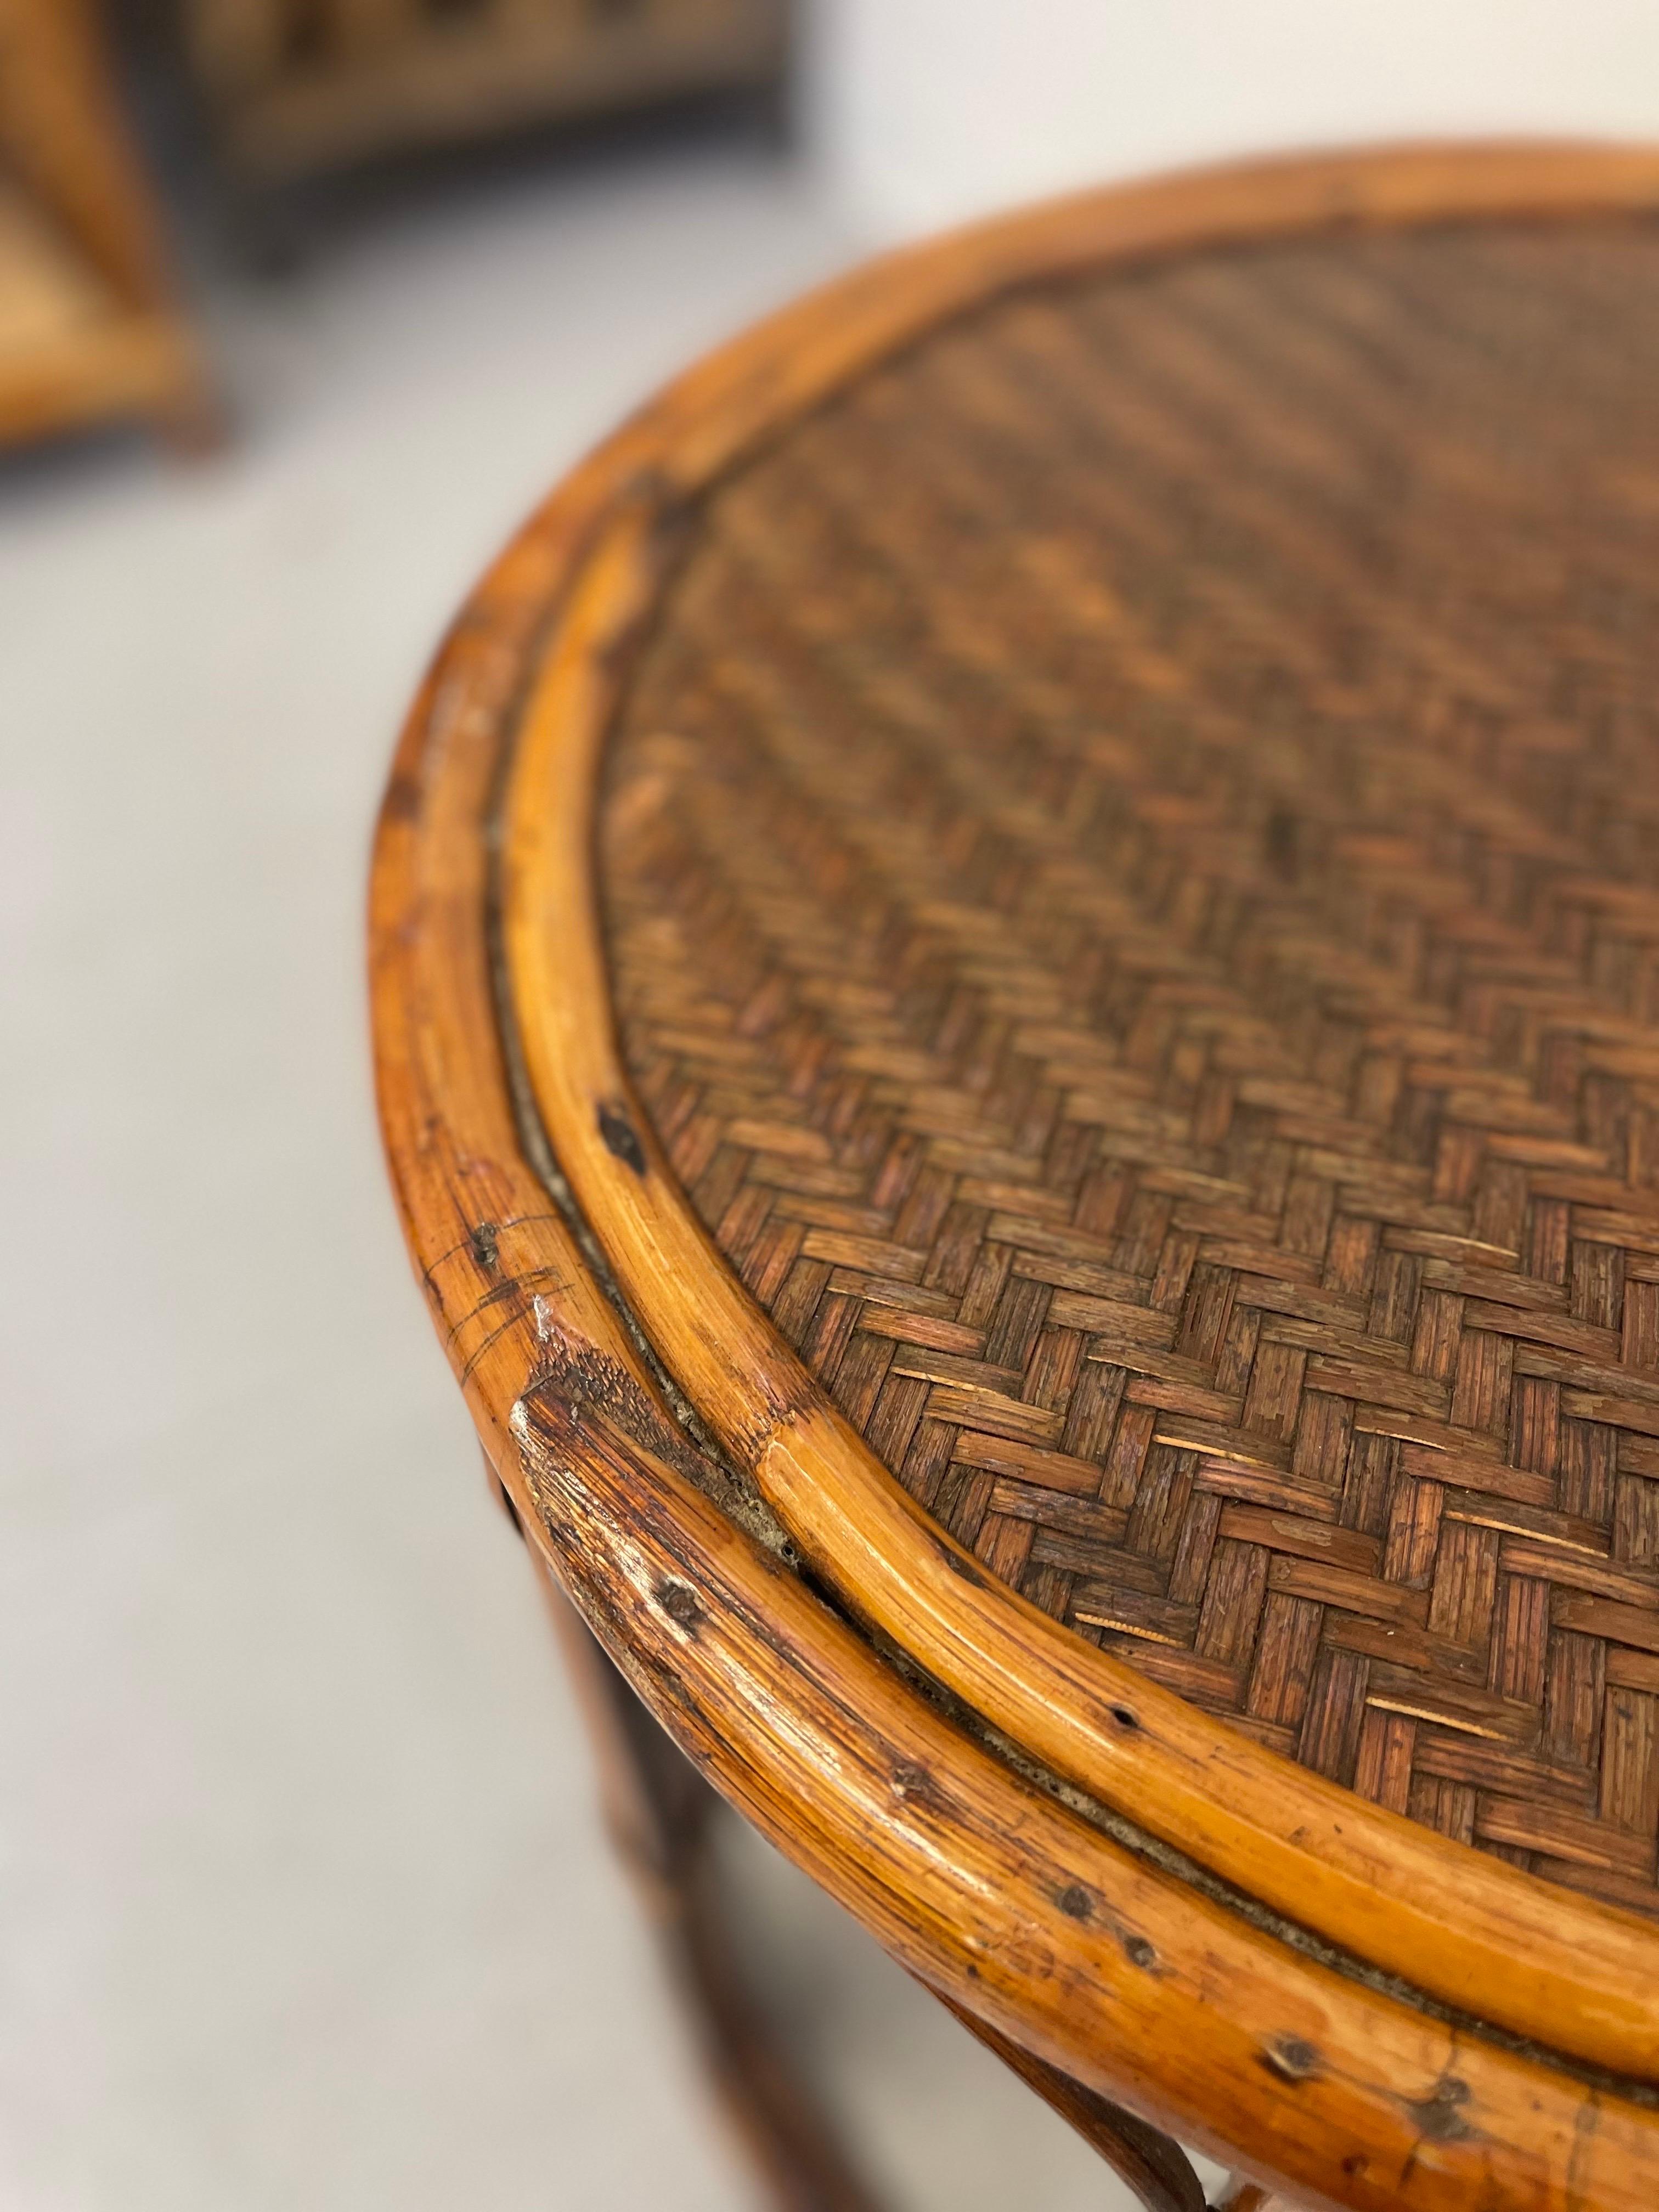 Beistelltisch mit geflochtener Platte und Kannelierung am Sockel. Möglicherweise aus Bambus oder gebogenem Holz. Runde Form.
Vintage-Zustand im Einklang mit dem Alter wie abgebildet.